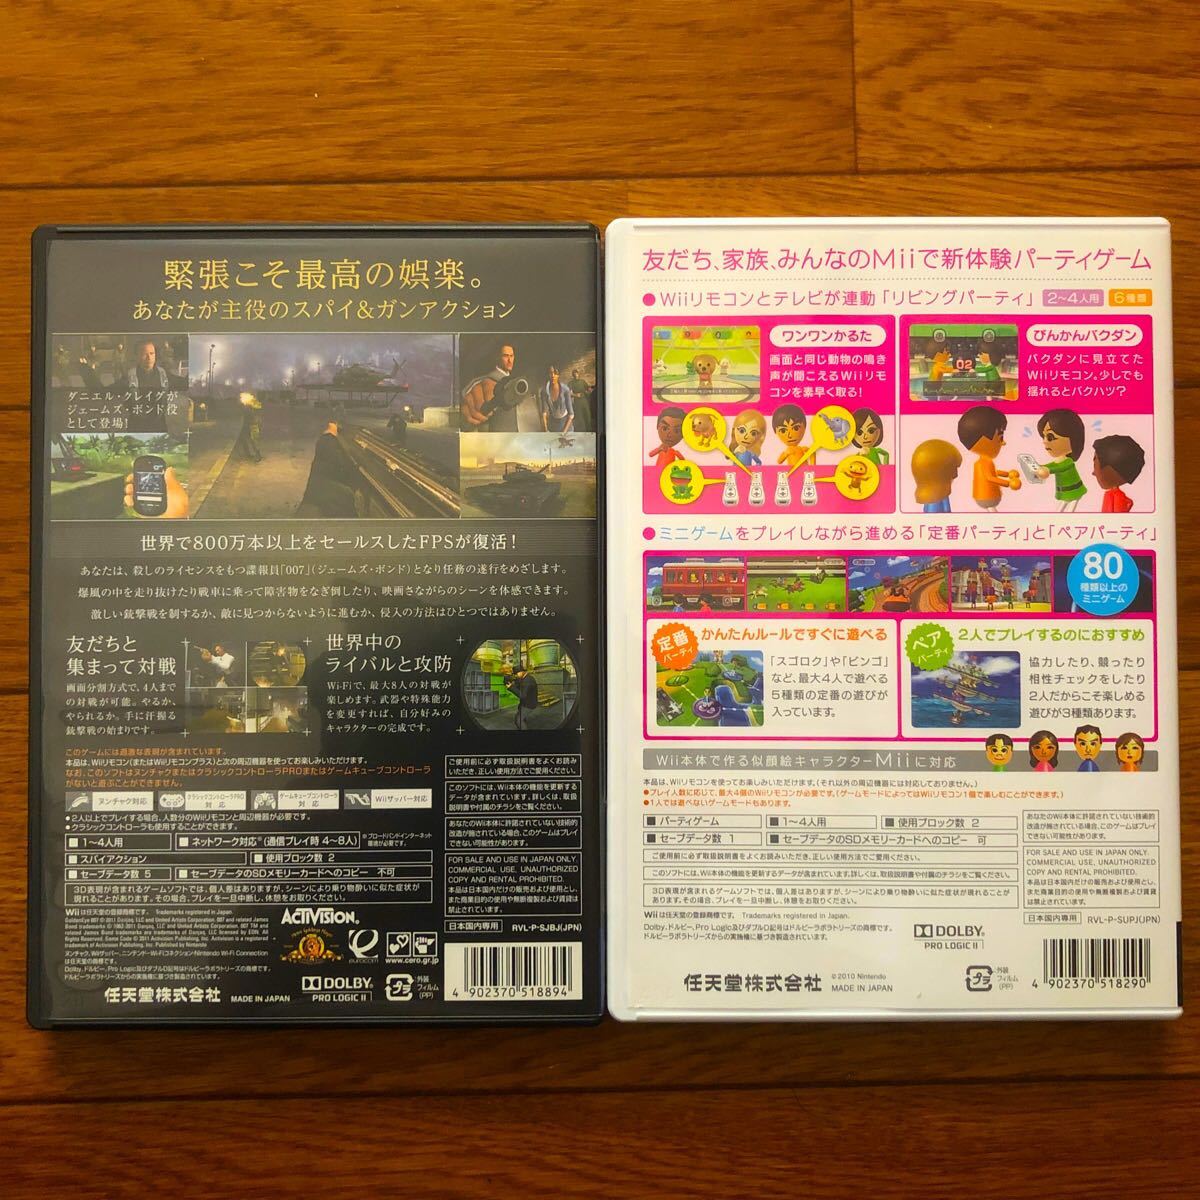 【Wii】 ゴールデンアイ 007 Wii Party セット 動作確認済